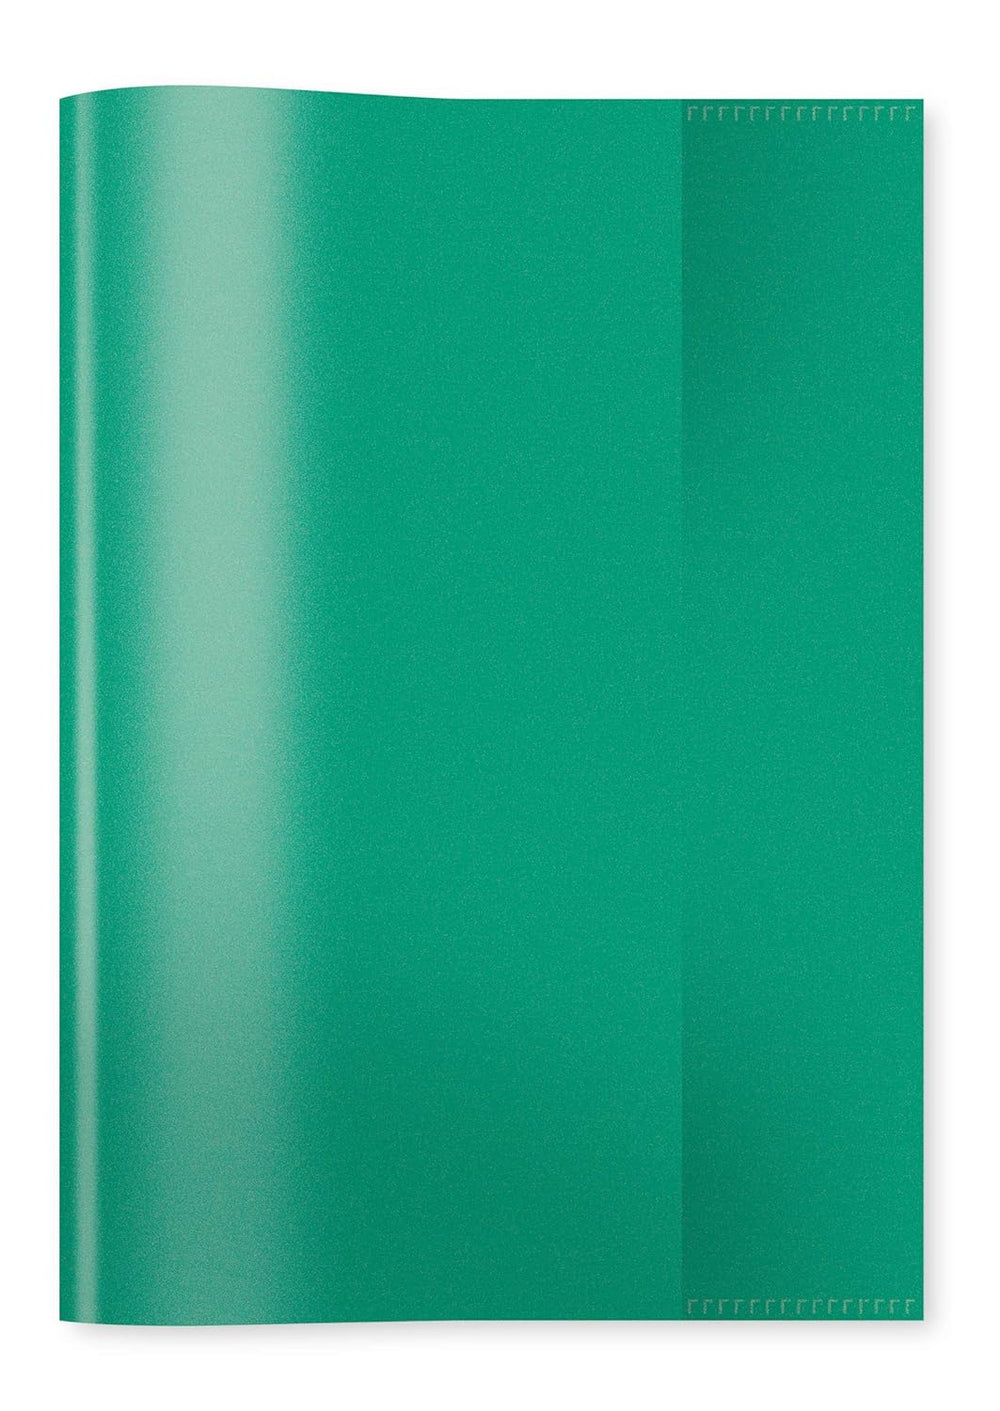 HERMA Heftschoner, grün, A5, transparent, PP Folie